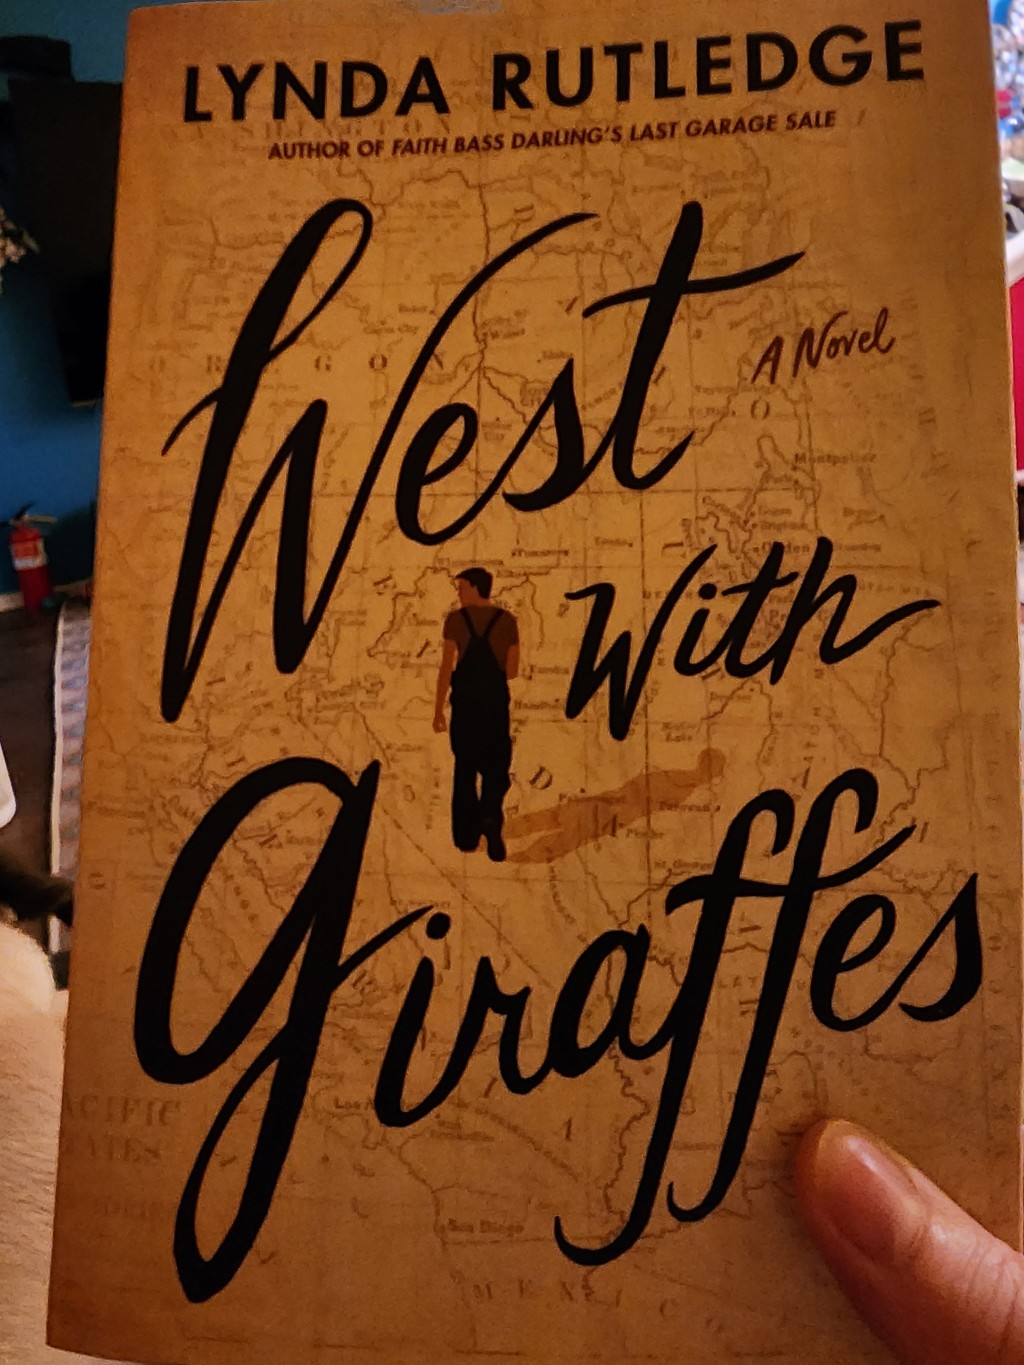 West with Giraffes by Lynn Rutledge